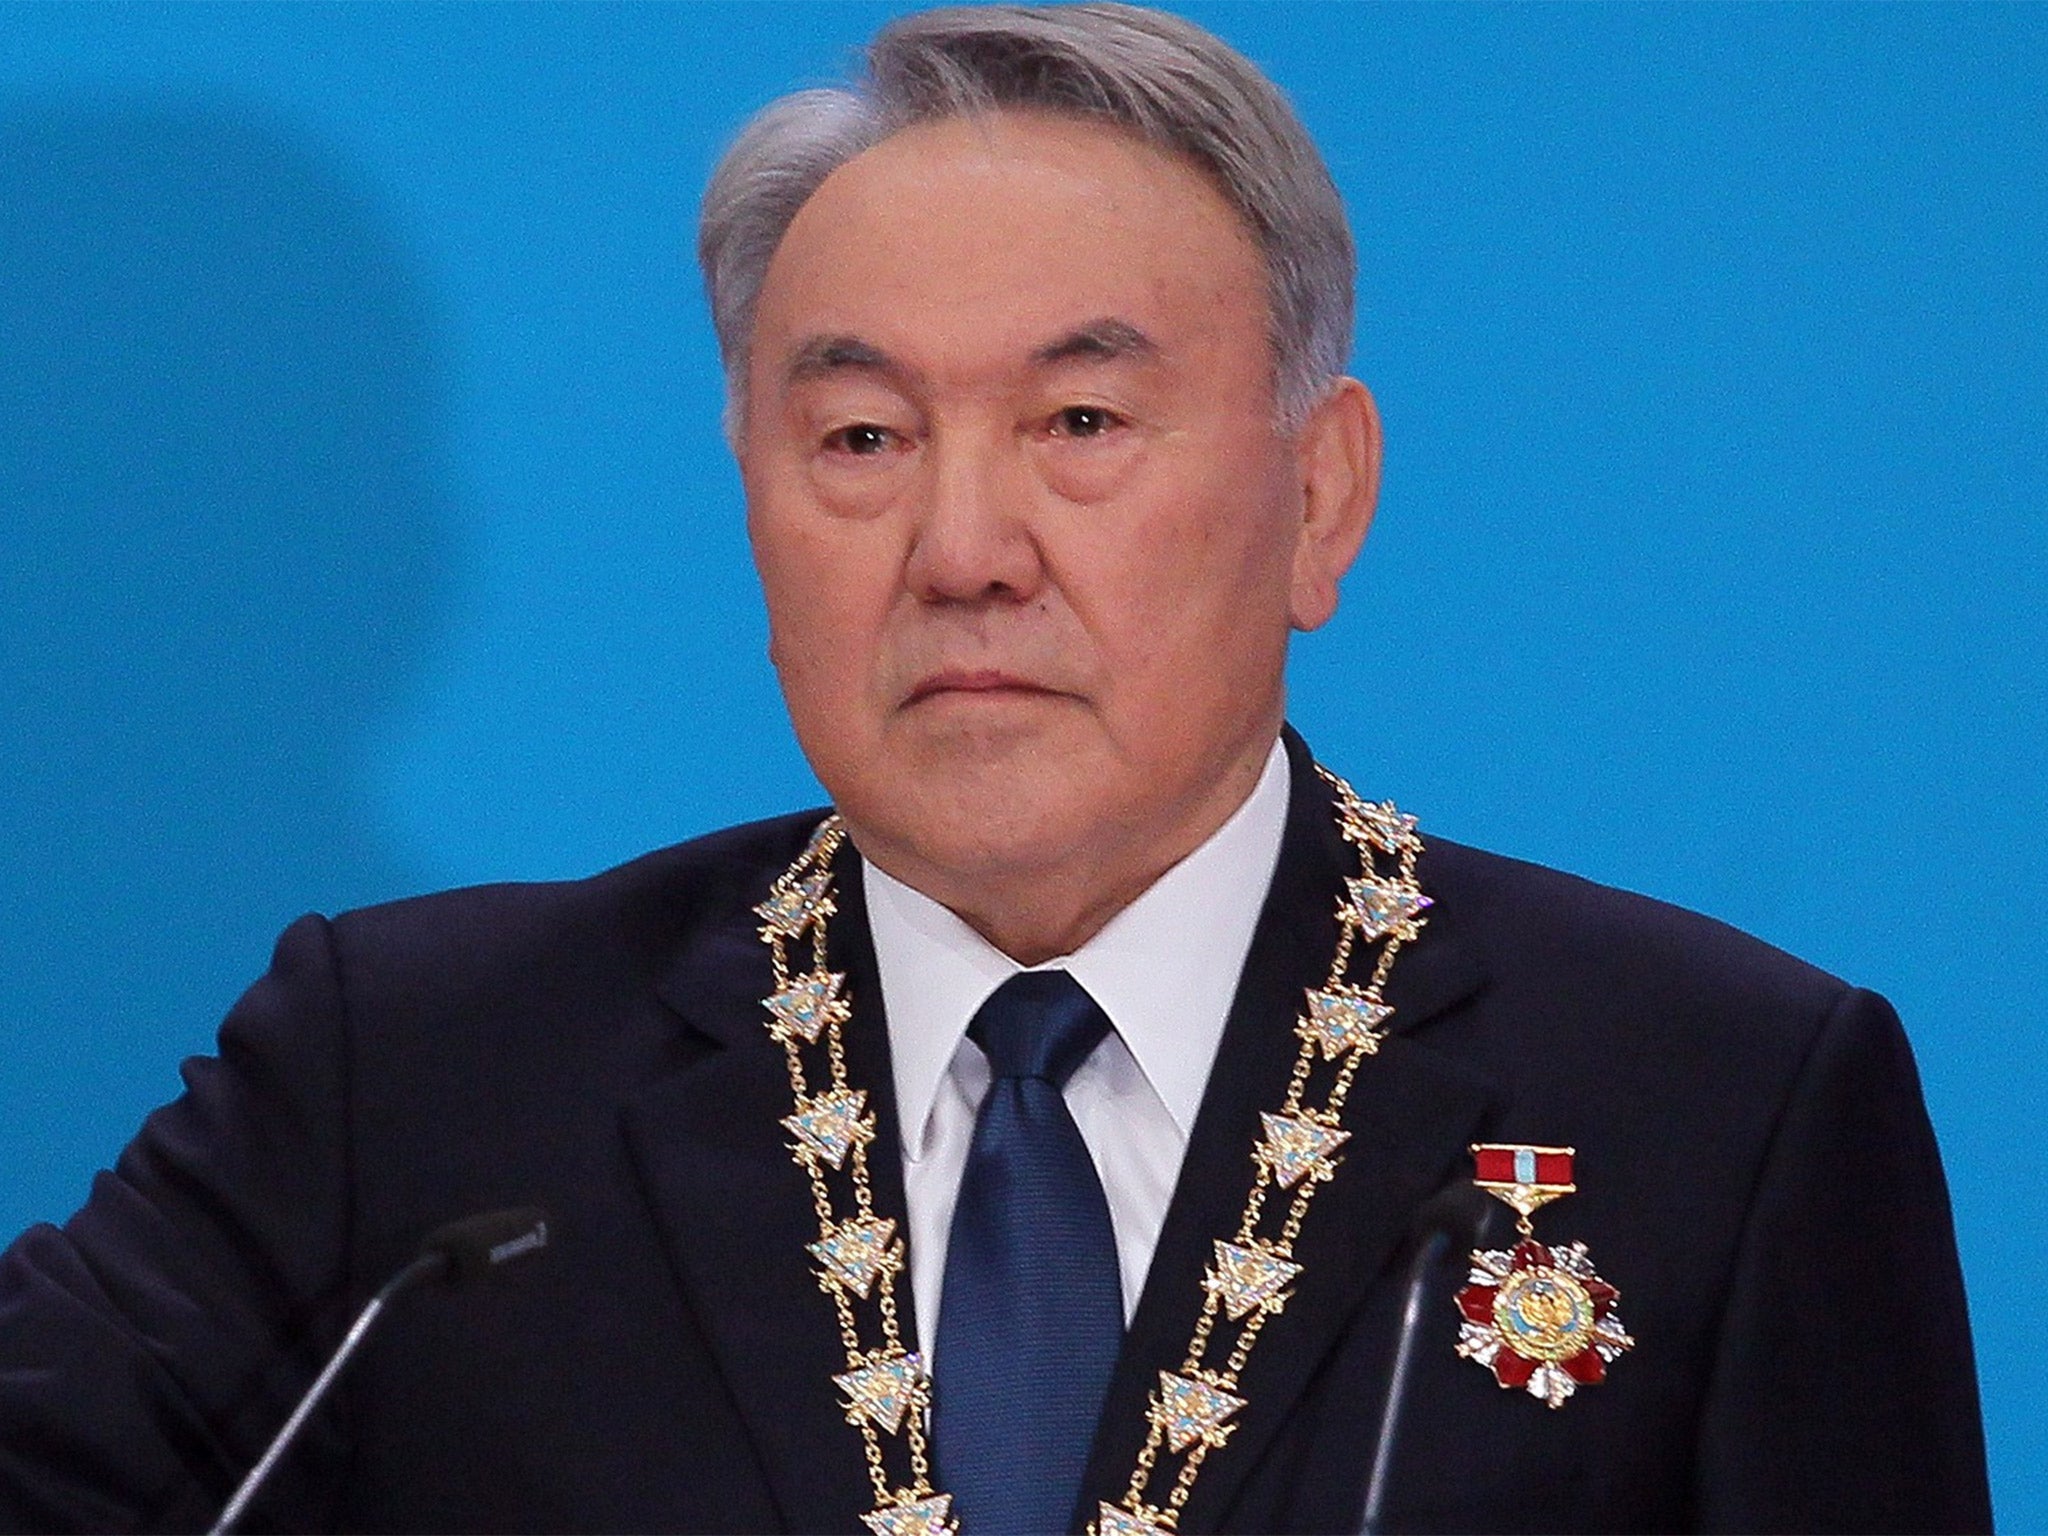 Nursultan Nazarbayev won 97.7 per cent of the vote in April